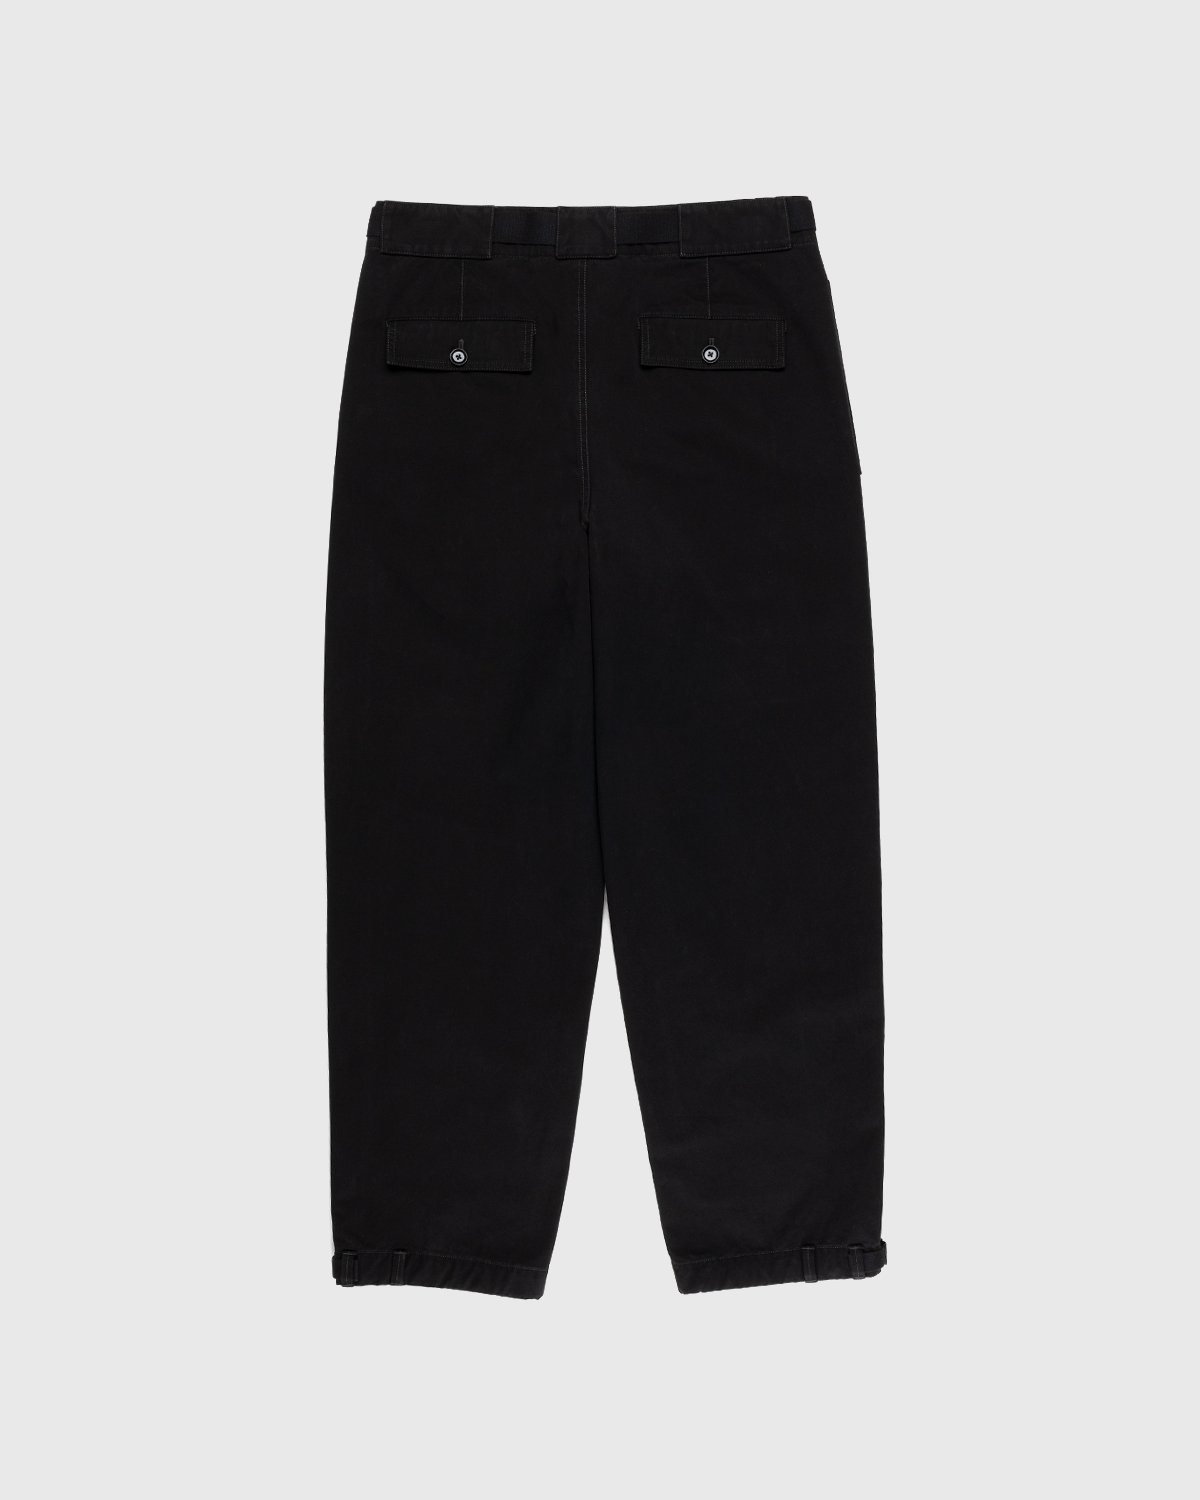 Lemaire - Utility Pants Black - Clothing - Black - Image 2